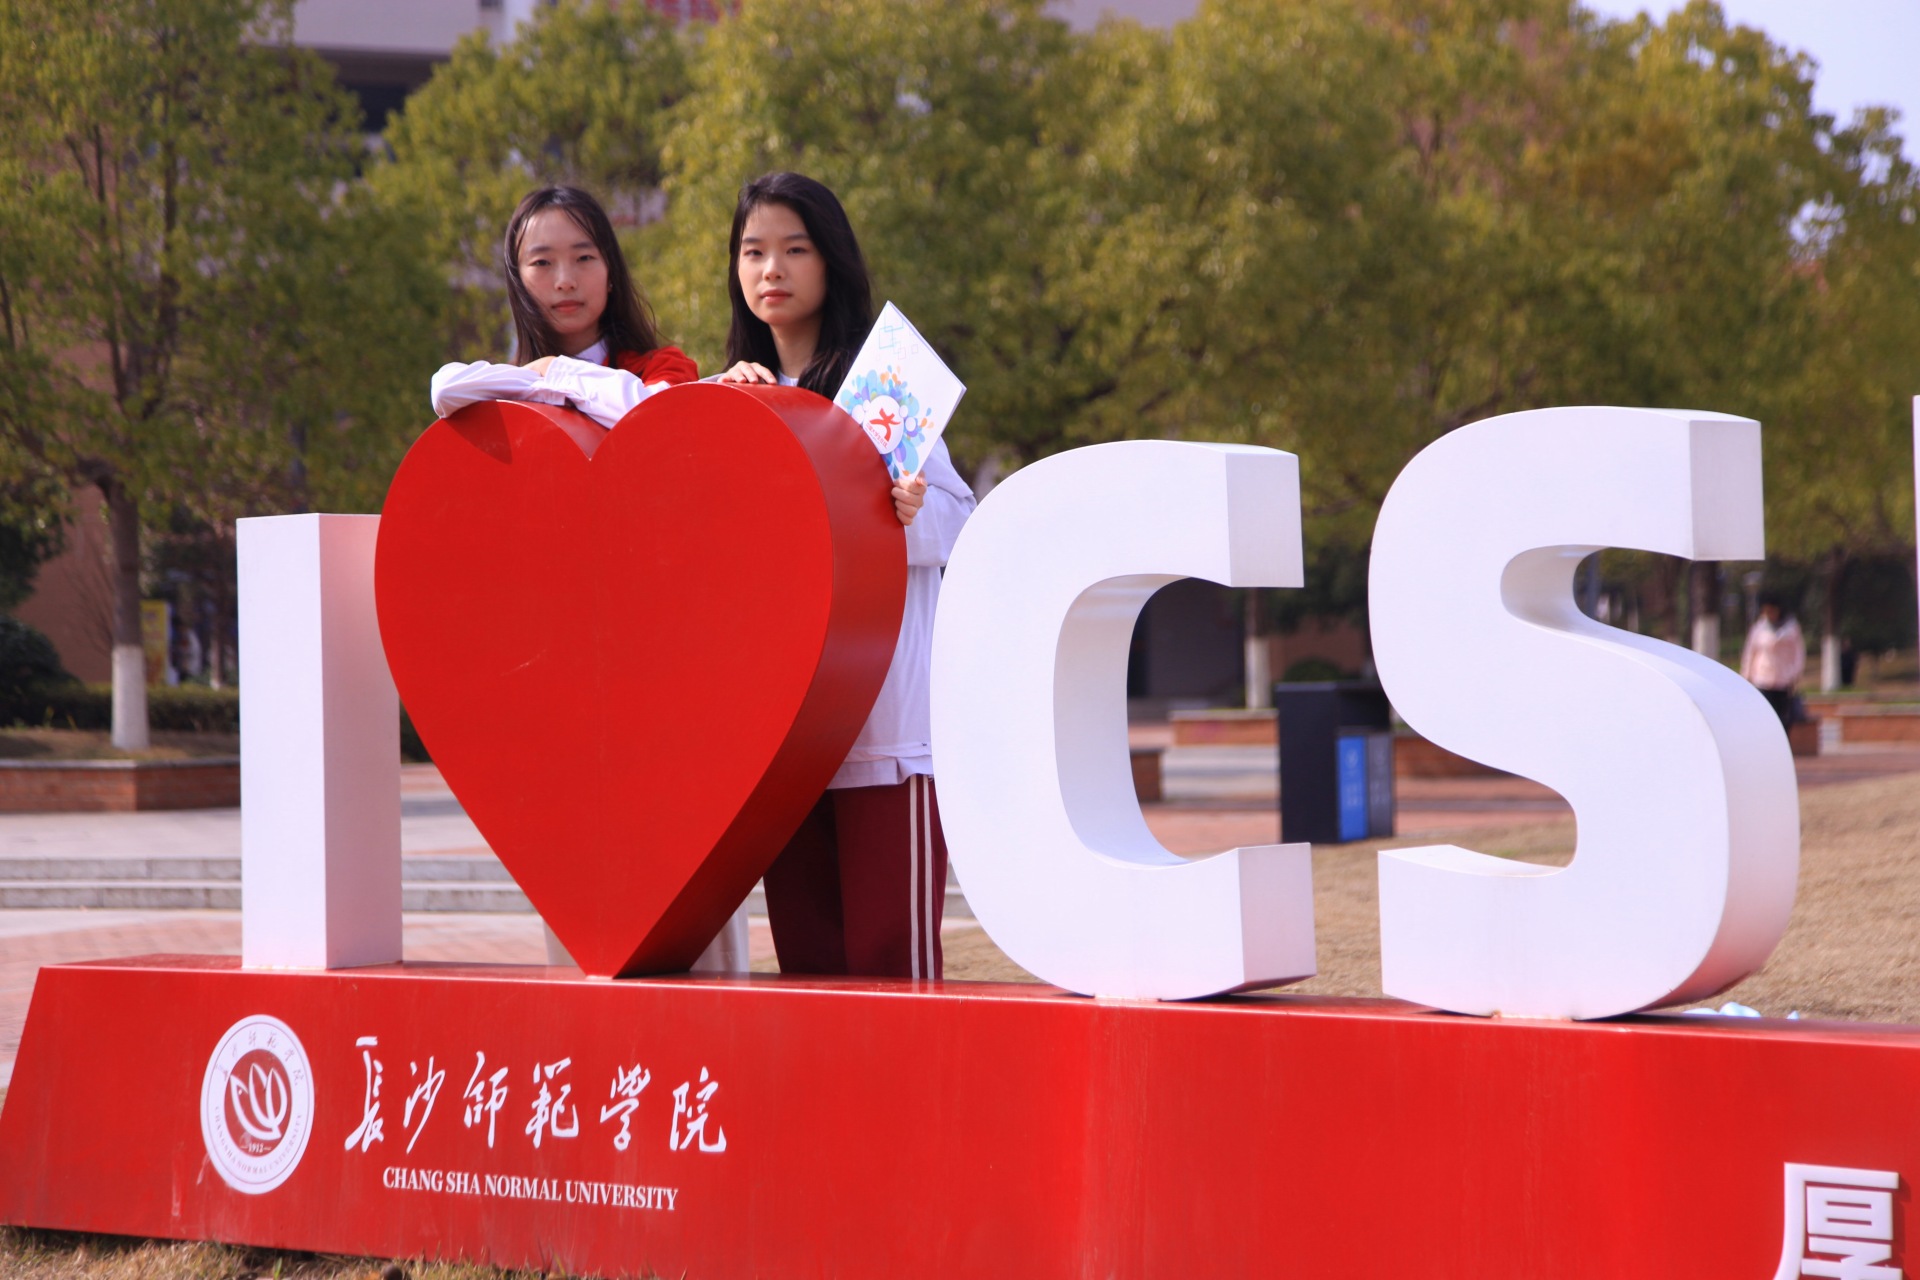 中国大学生在线与长师学子的邂逅